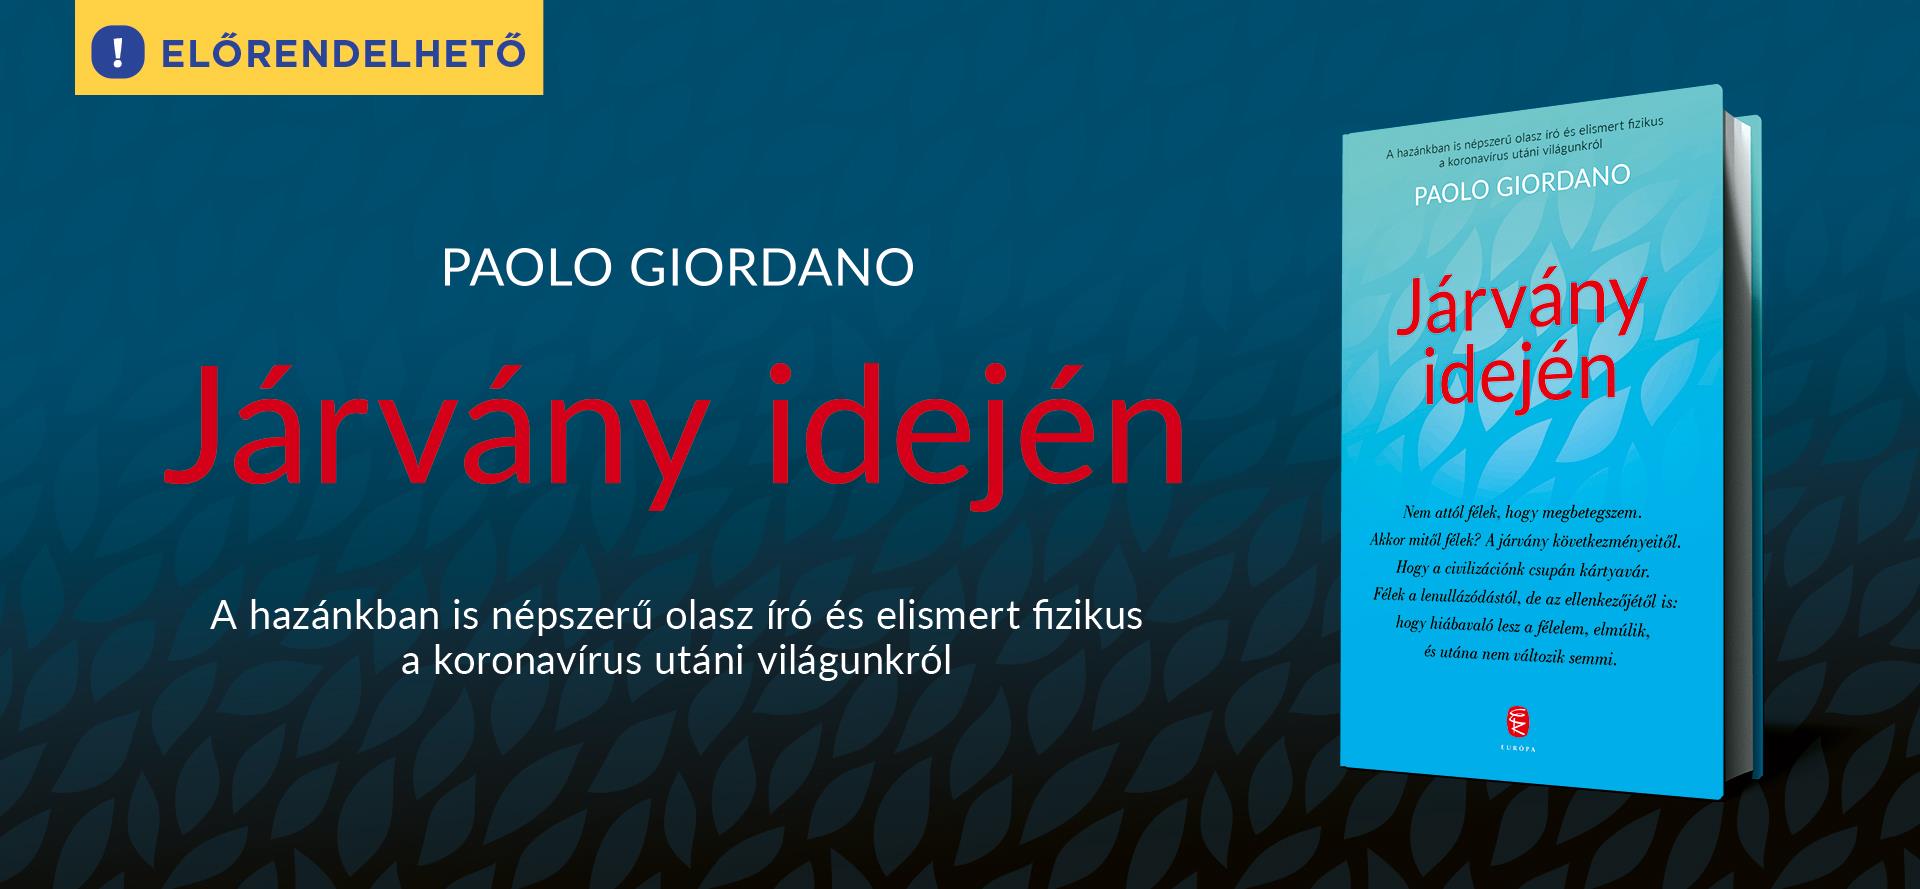 Járvány idején - előrendelhető az első magyarul olvasható könyv a koronavírusról